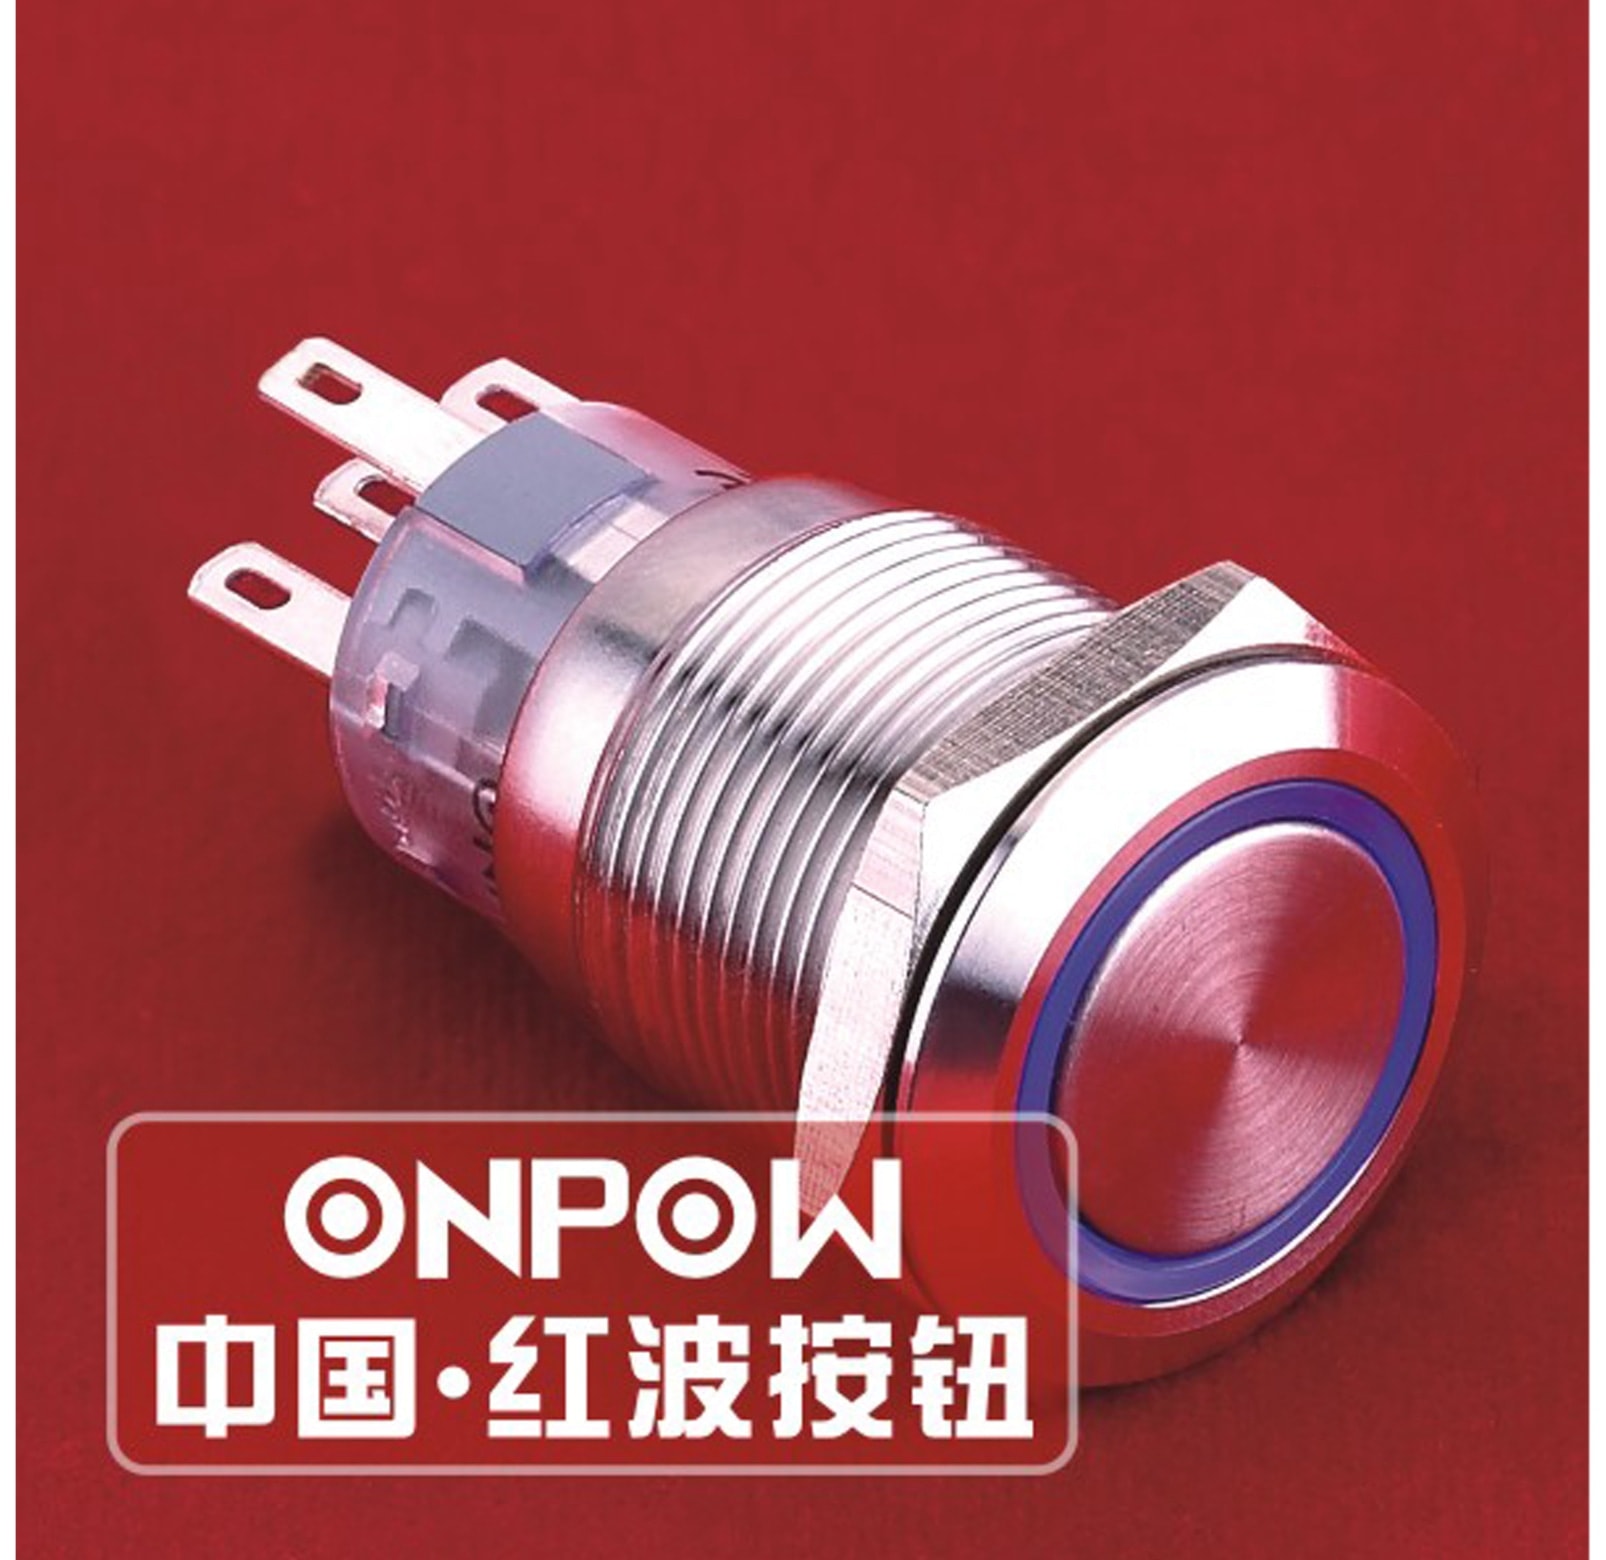 ONPOW Schalter, 24 V/DC, 1x Off/On, Beleuchtung weiß, Lötanschluss, flach rund, Edelstahl, 19 mm